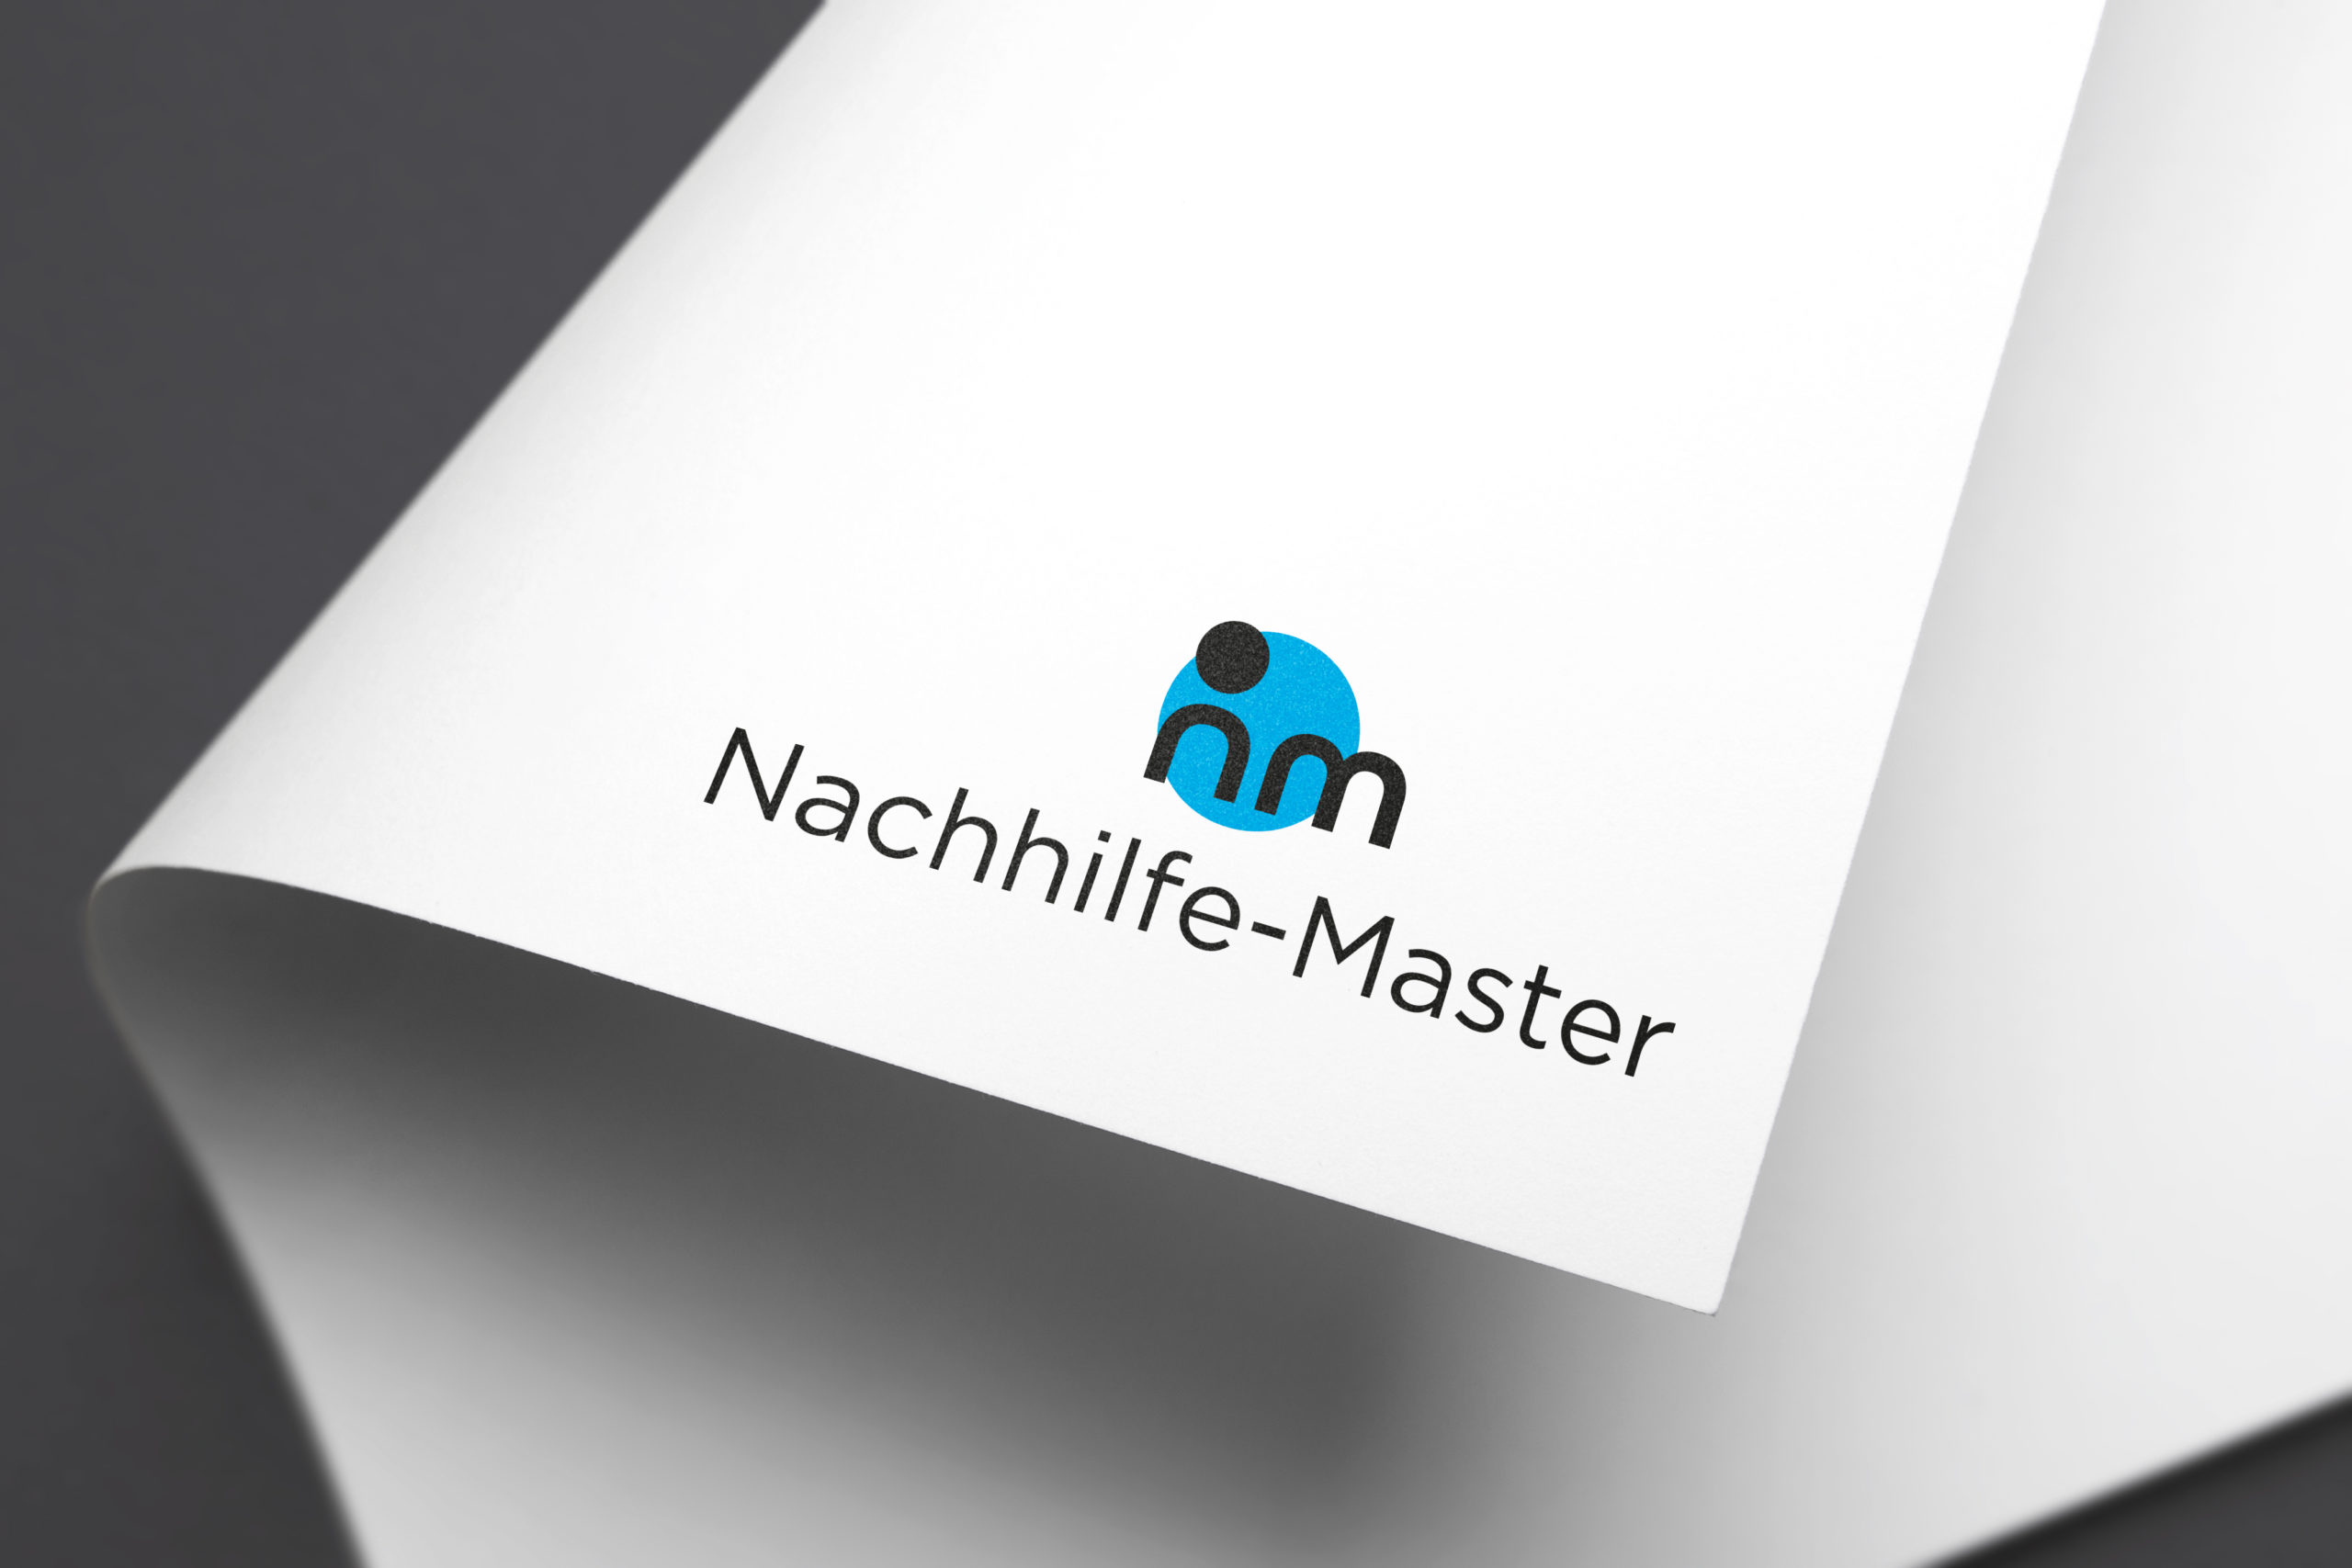 Nachhilfe-Master Logo auf einem Blattpapier